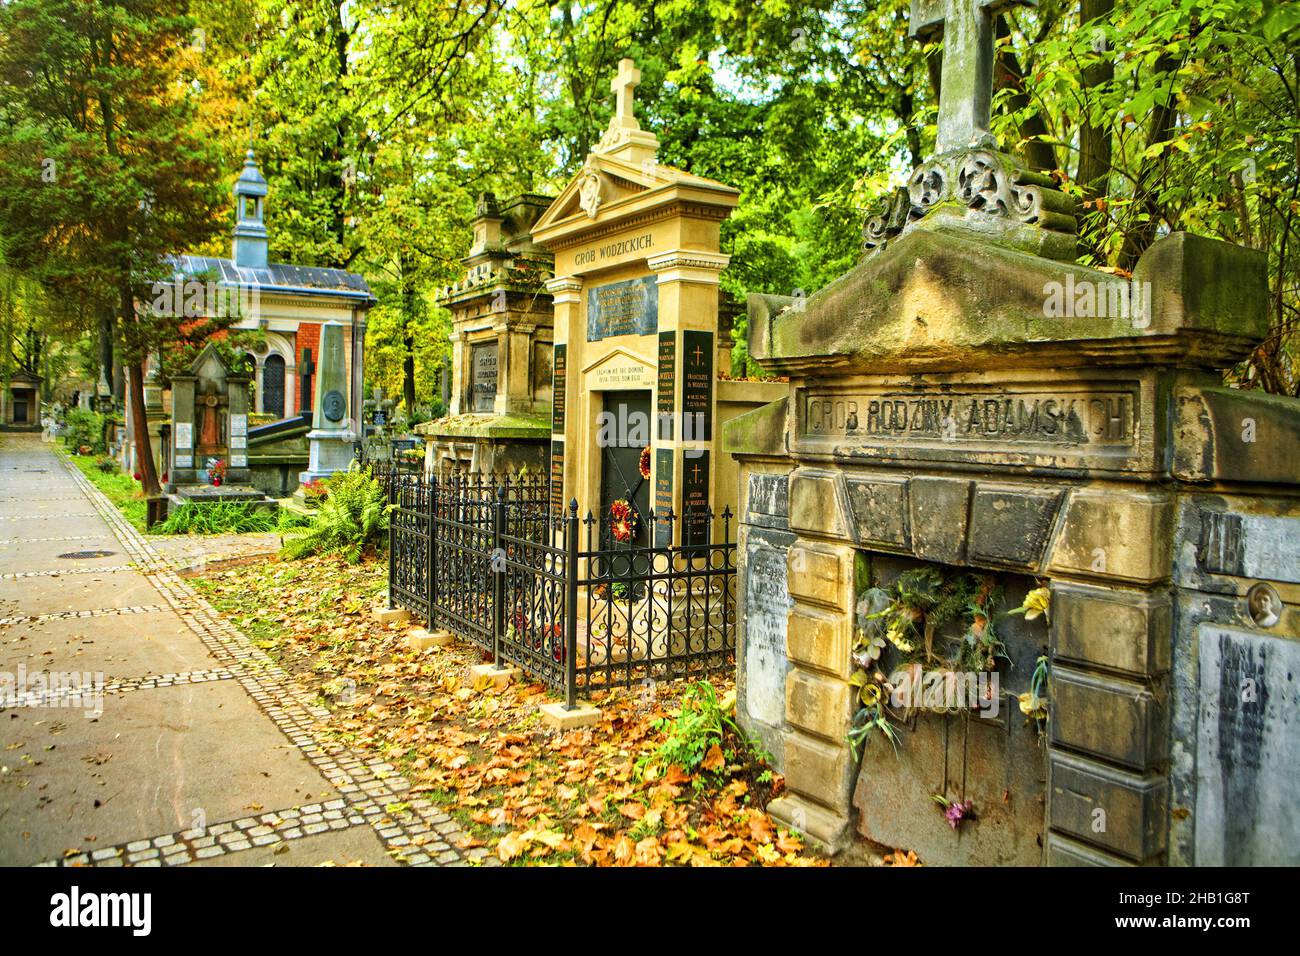 Poland, Cracow, Rakowiecki cementary. Stock Photo